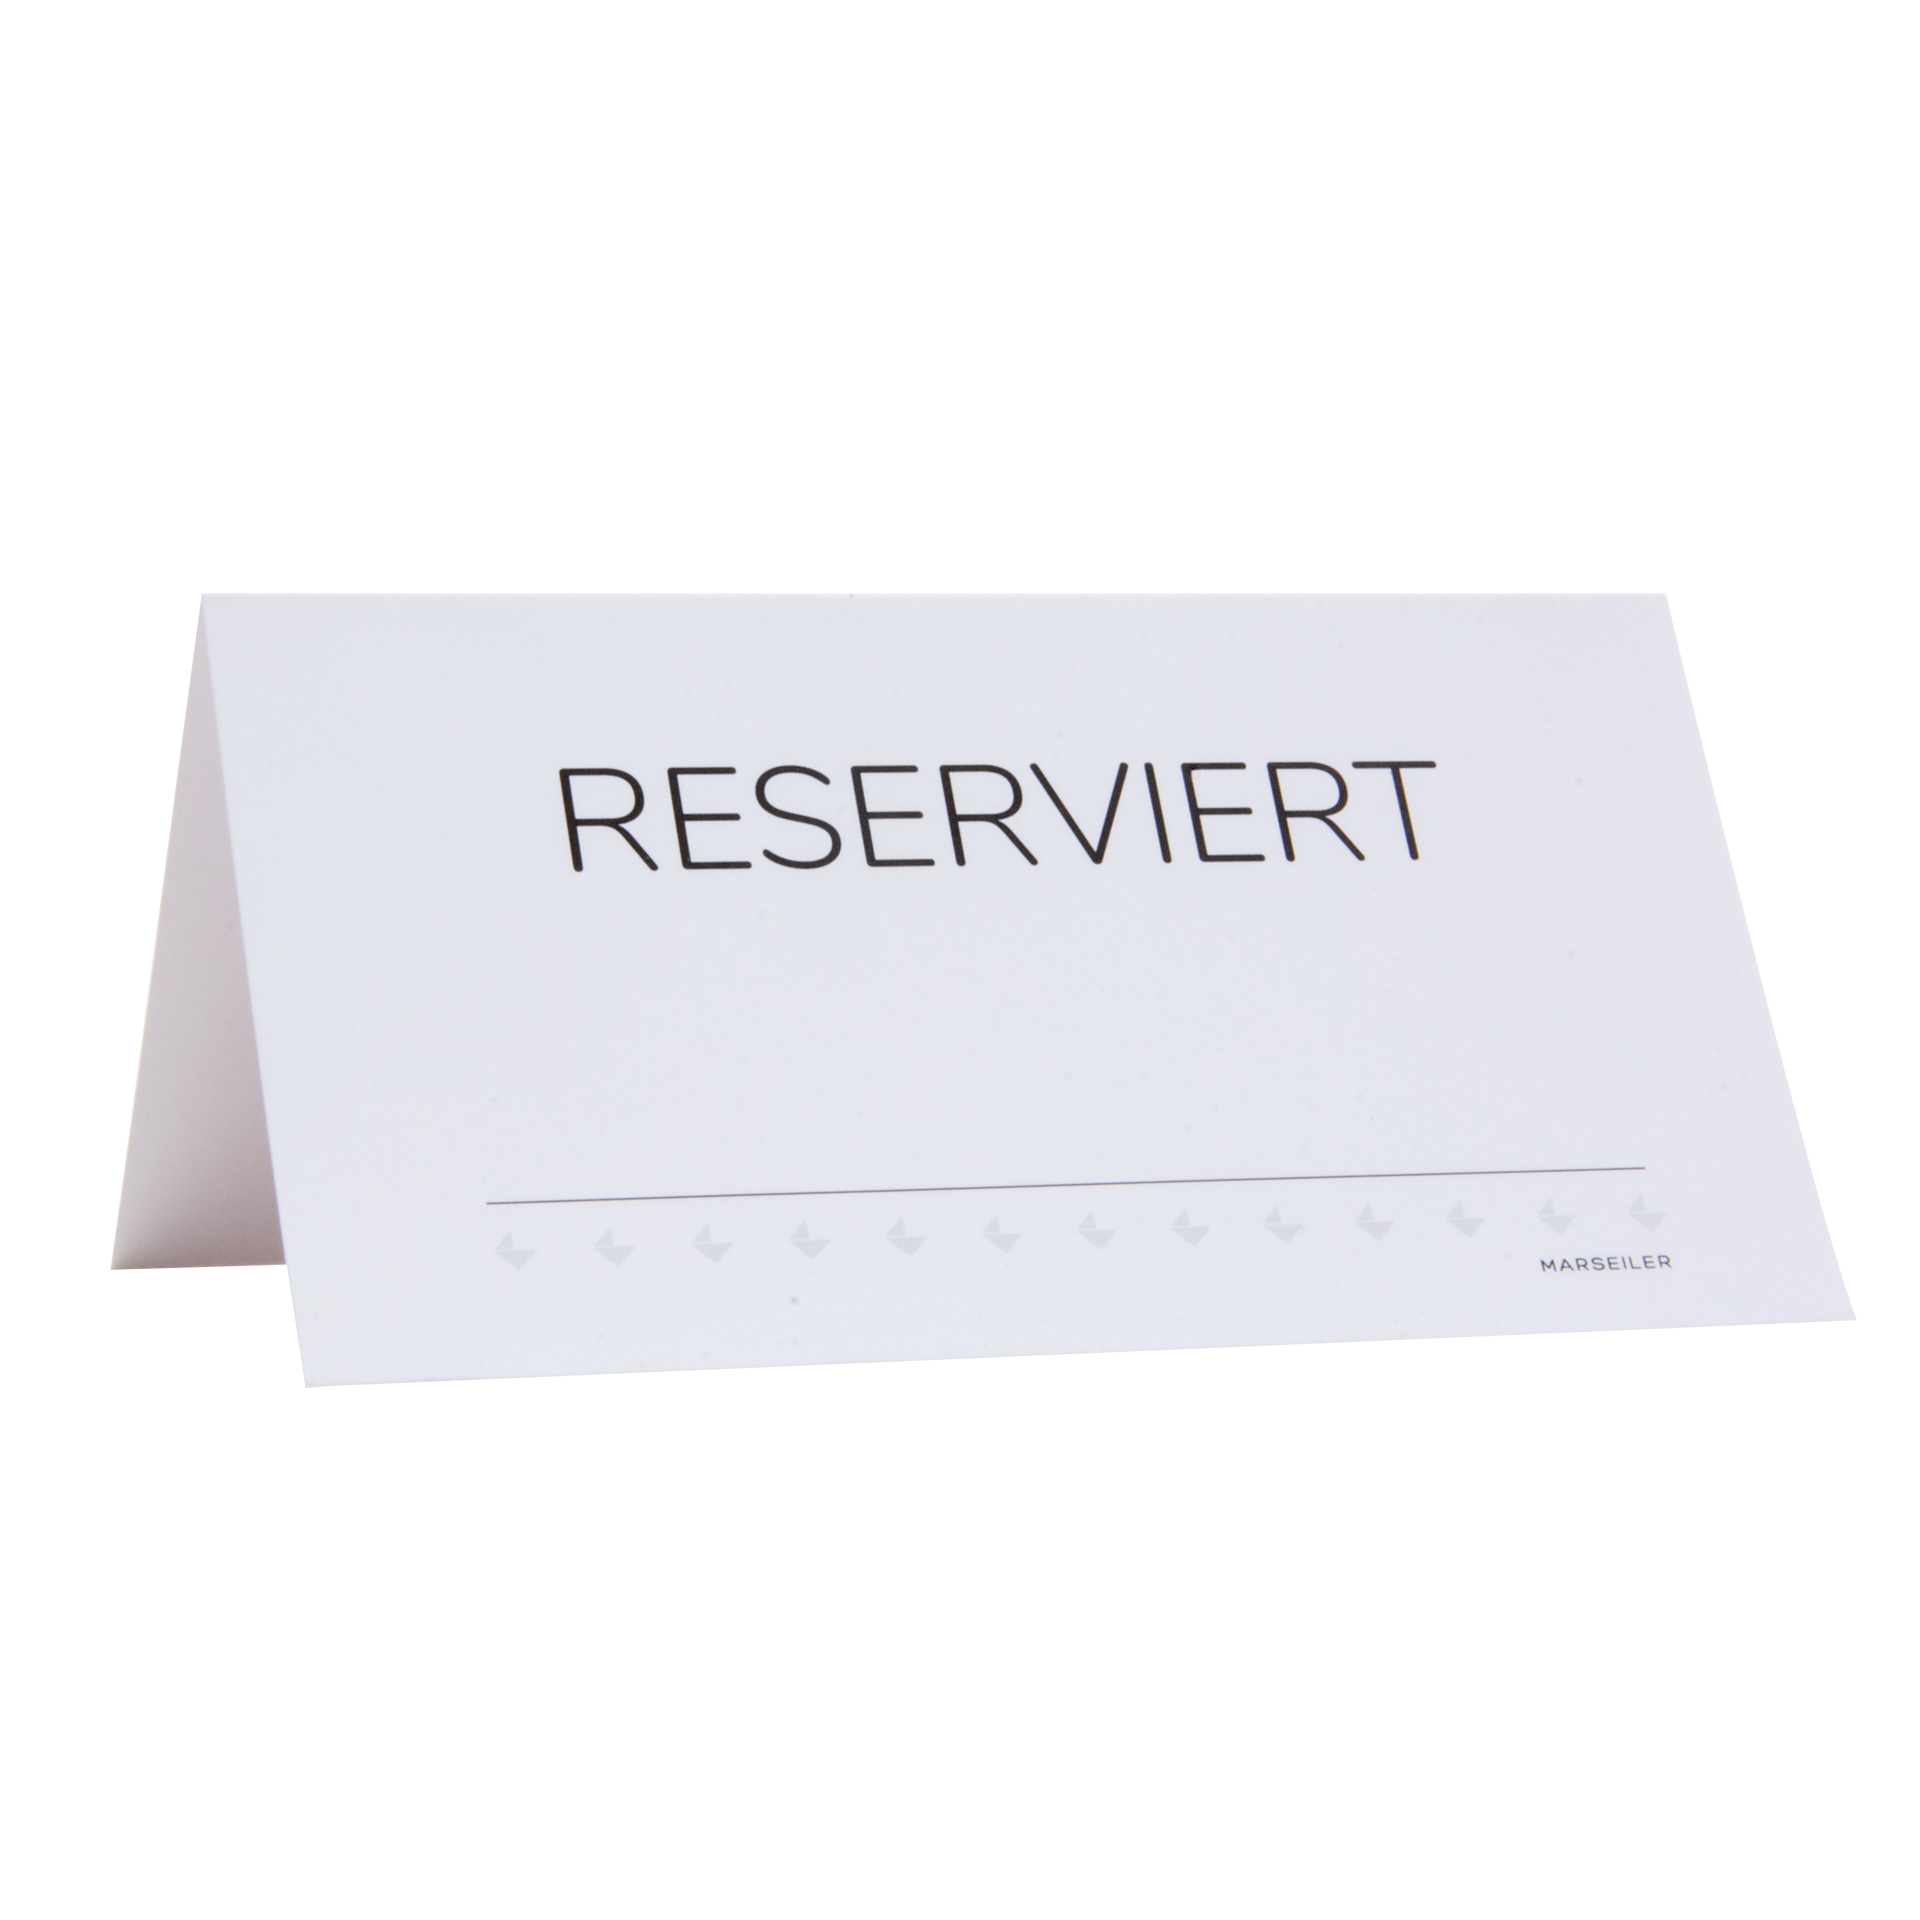 Reserviertkarte | 'Reserviert/Riservato' Karton 300 g/m² | weiß 12x6,5 cm